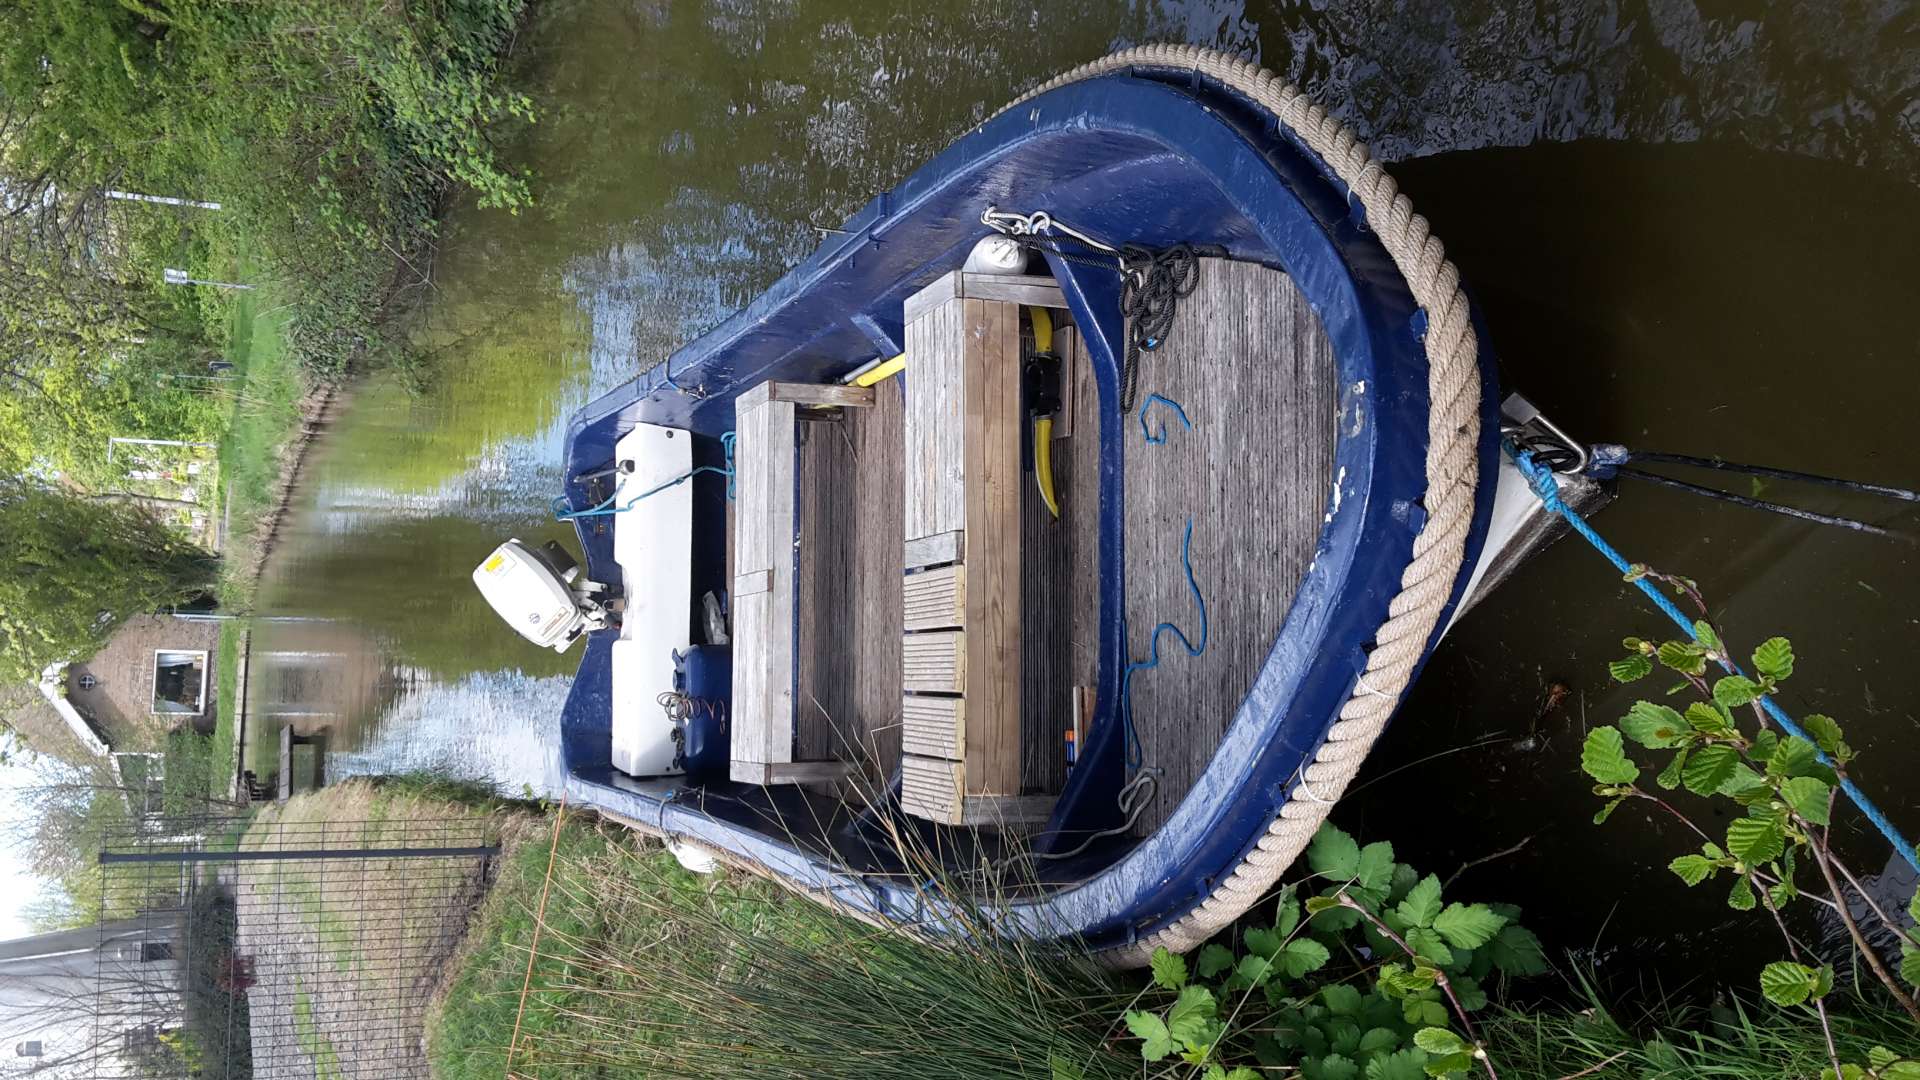 Motorboot buitenboordmotor te huur/Sloop with outboard engine for rental